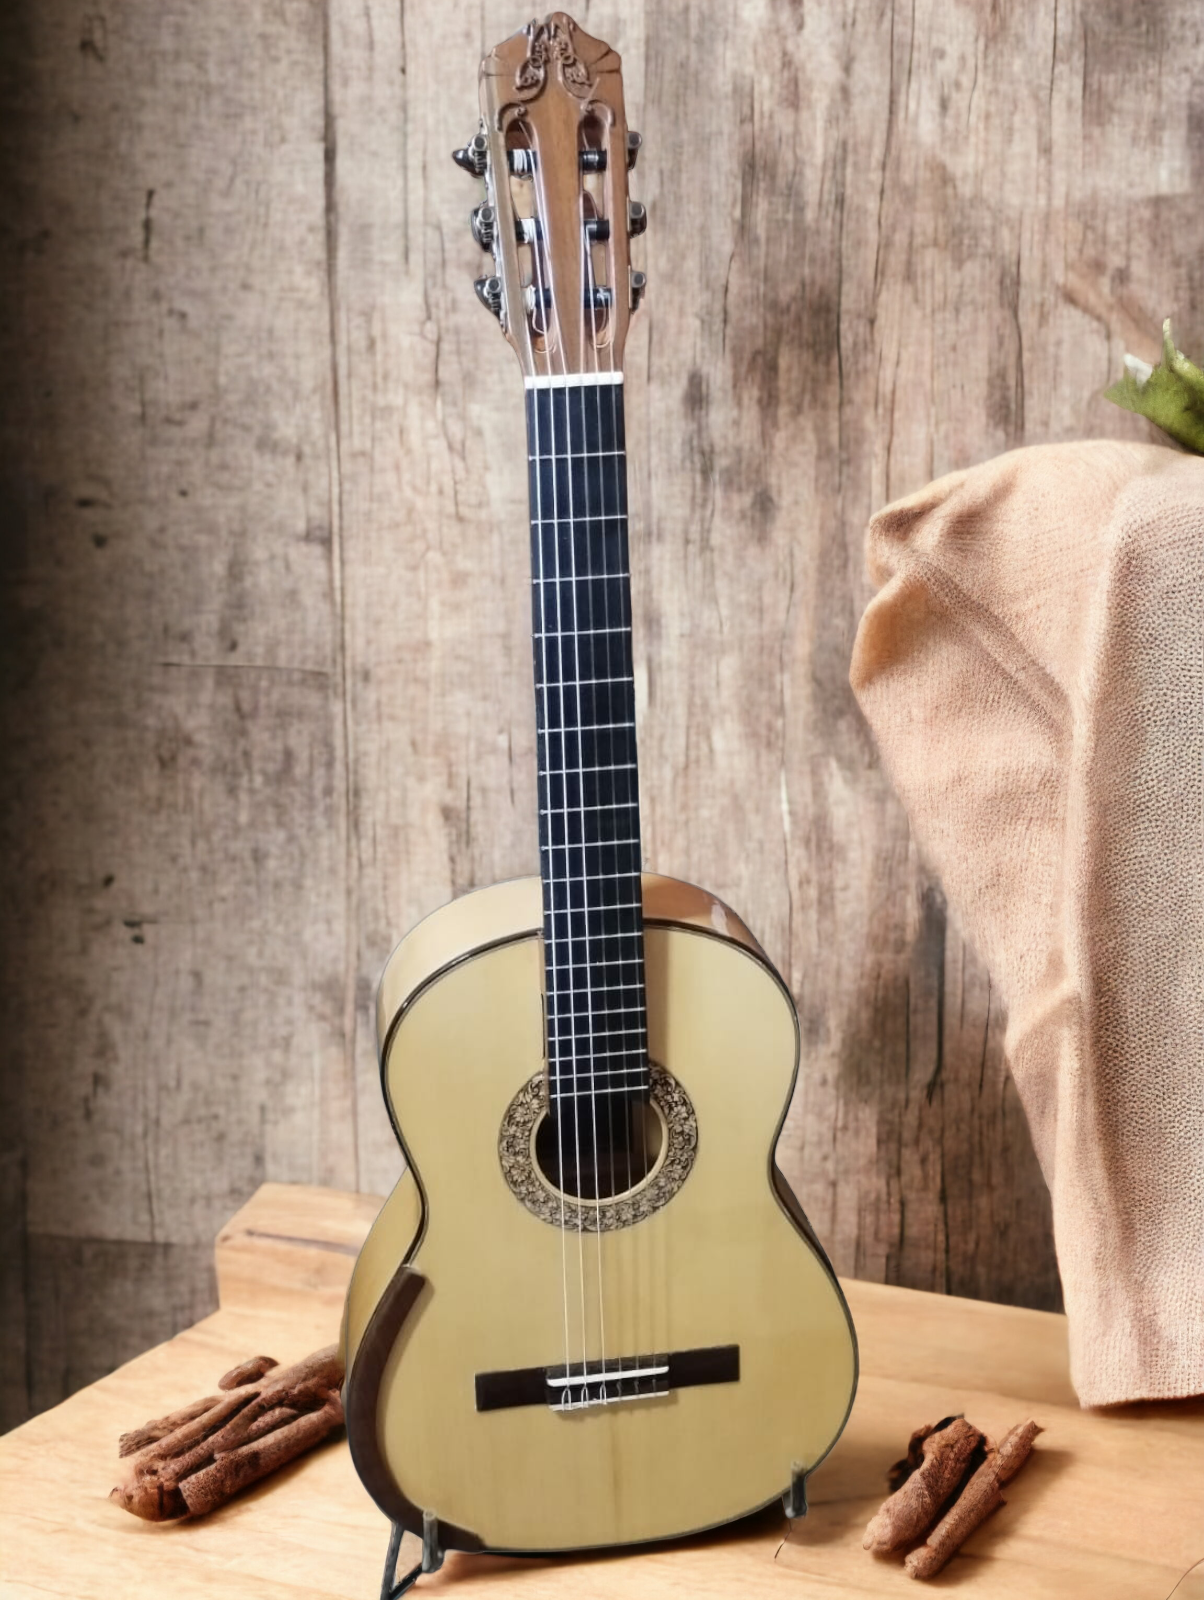 Increible Guitarra clasica de cipres Pepe Zalapa